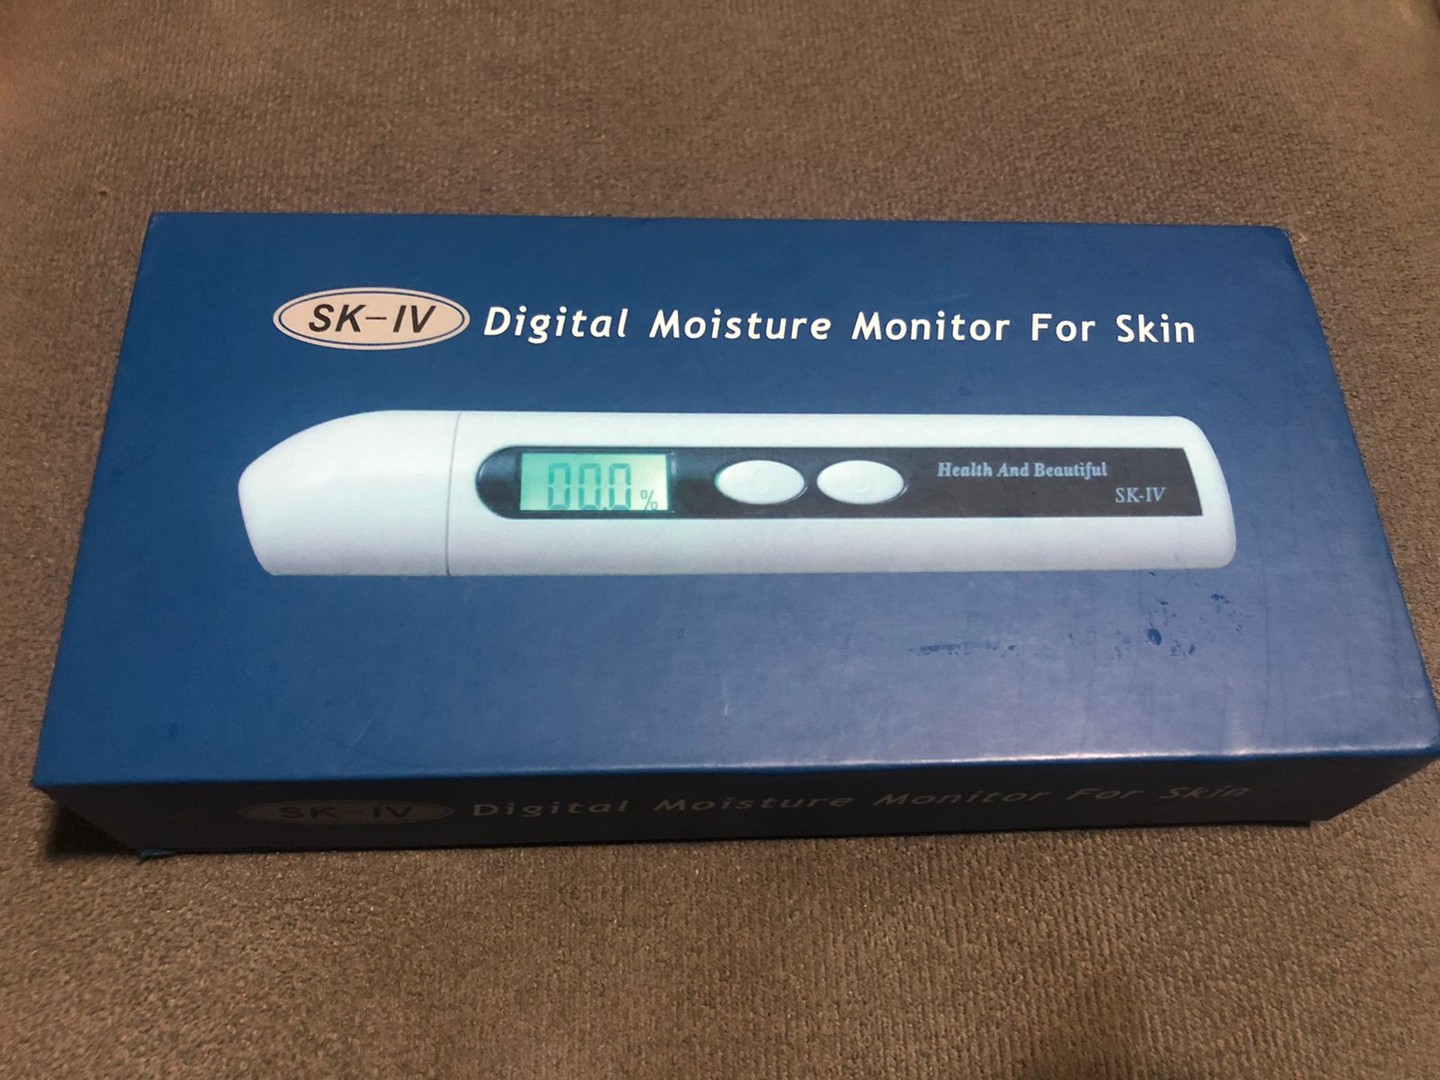 salud y belleza - Digital Moisture monitor for skin. Monitor digital medidor de humedad en la piel